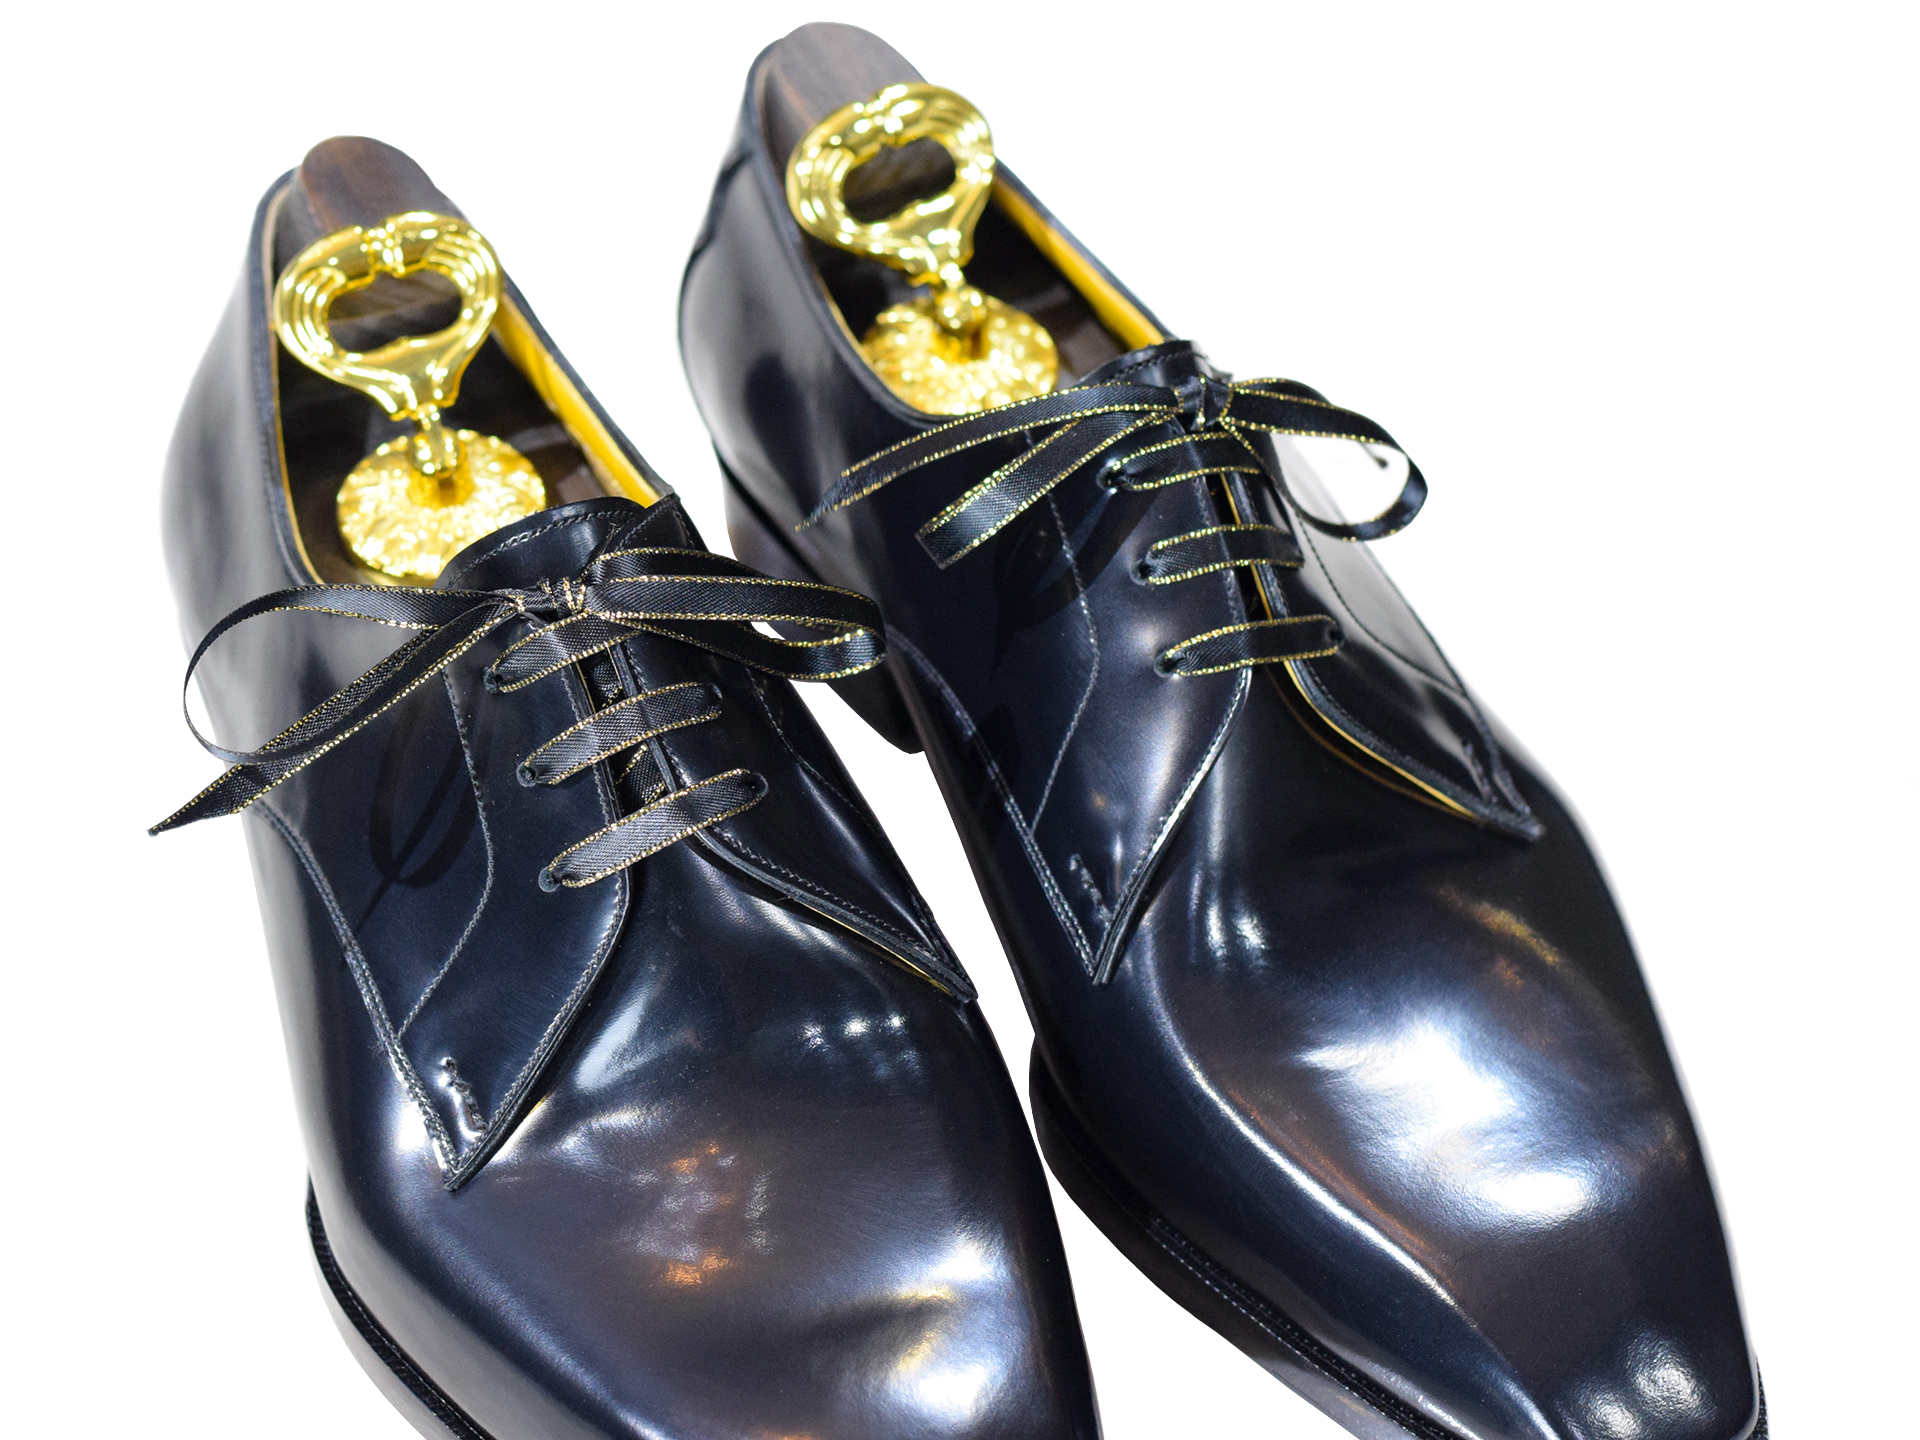 MTO Derby plaintoe shoes - Tuxedo dress shoes